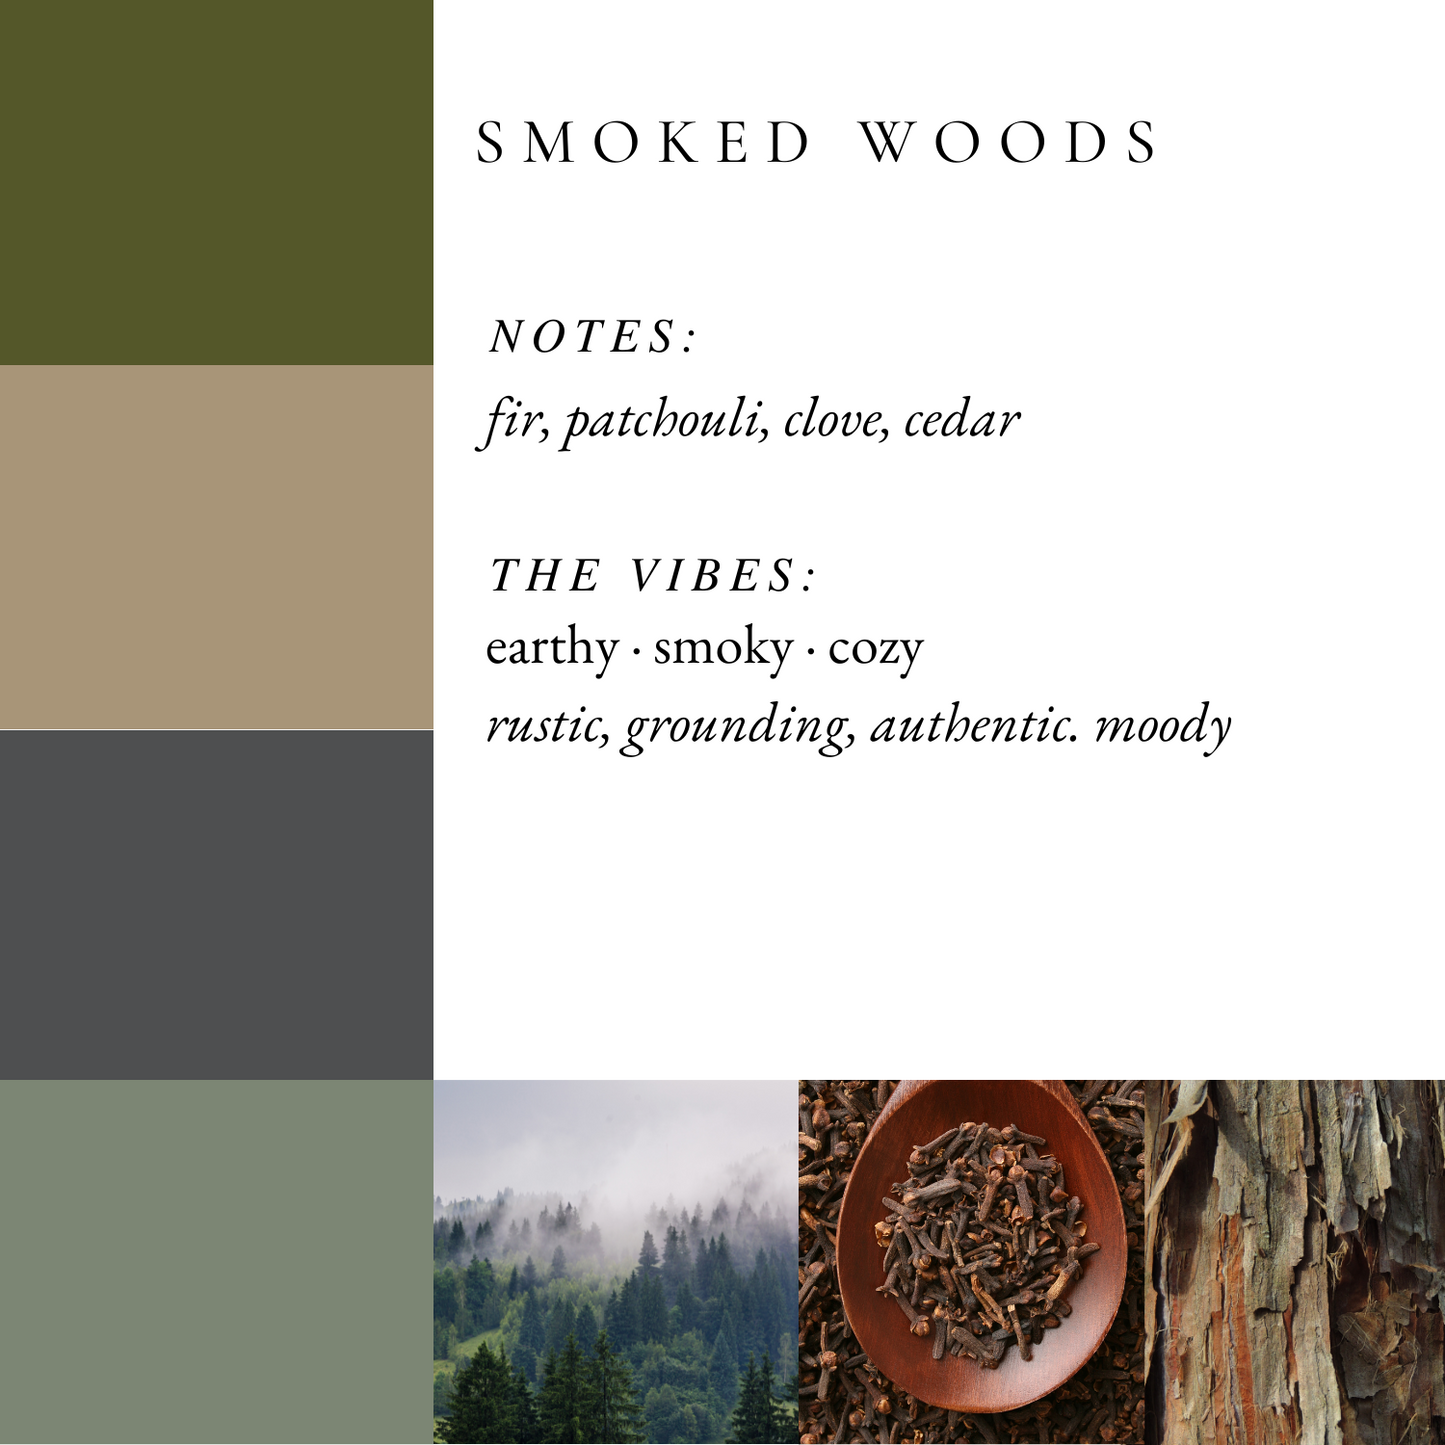 Smoked Woods